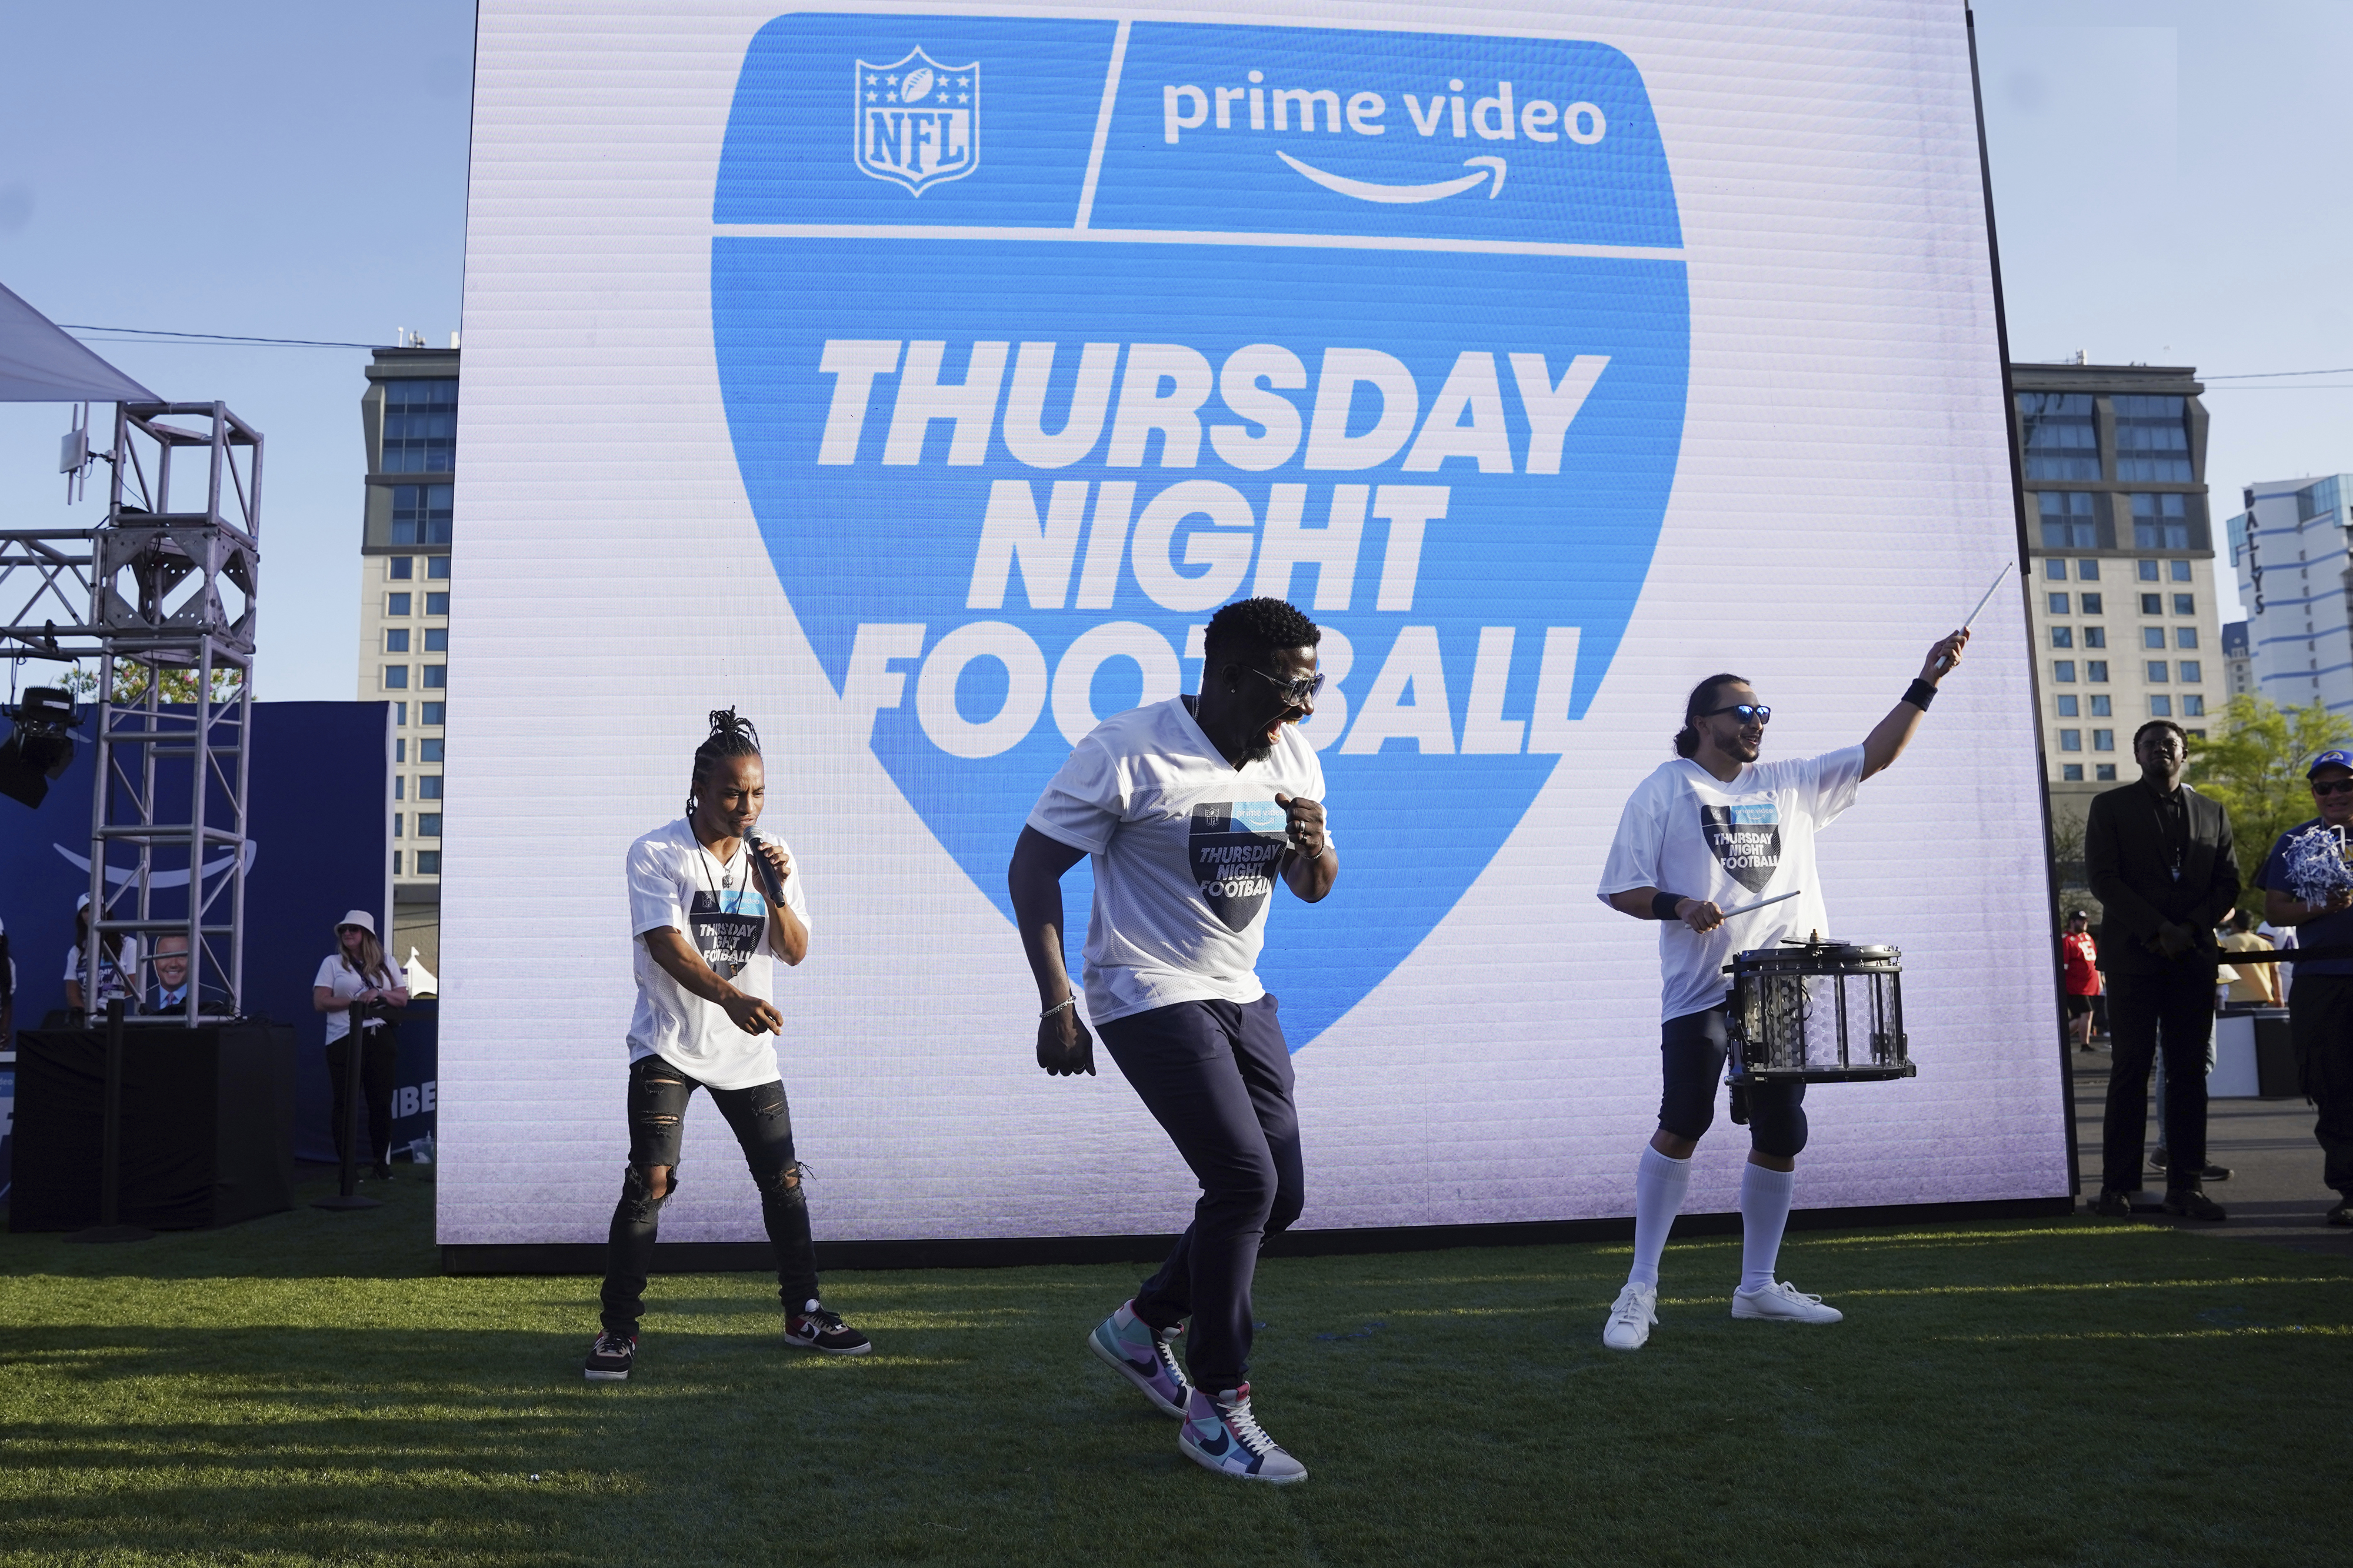 Amazon Prime ready to kick off Thursday Night Football